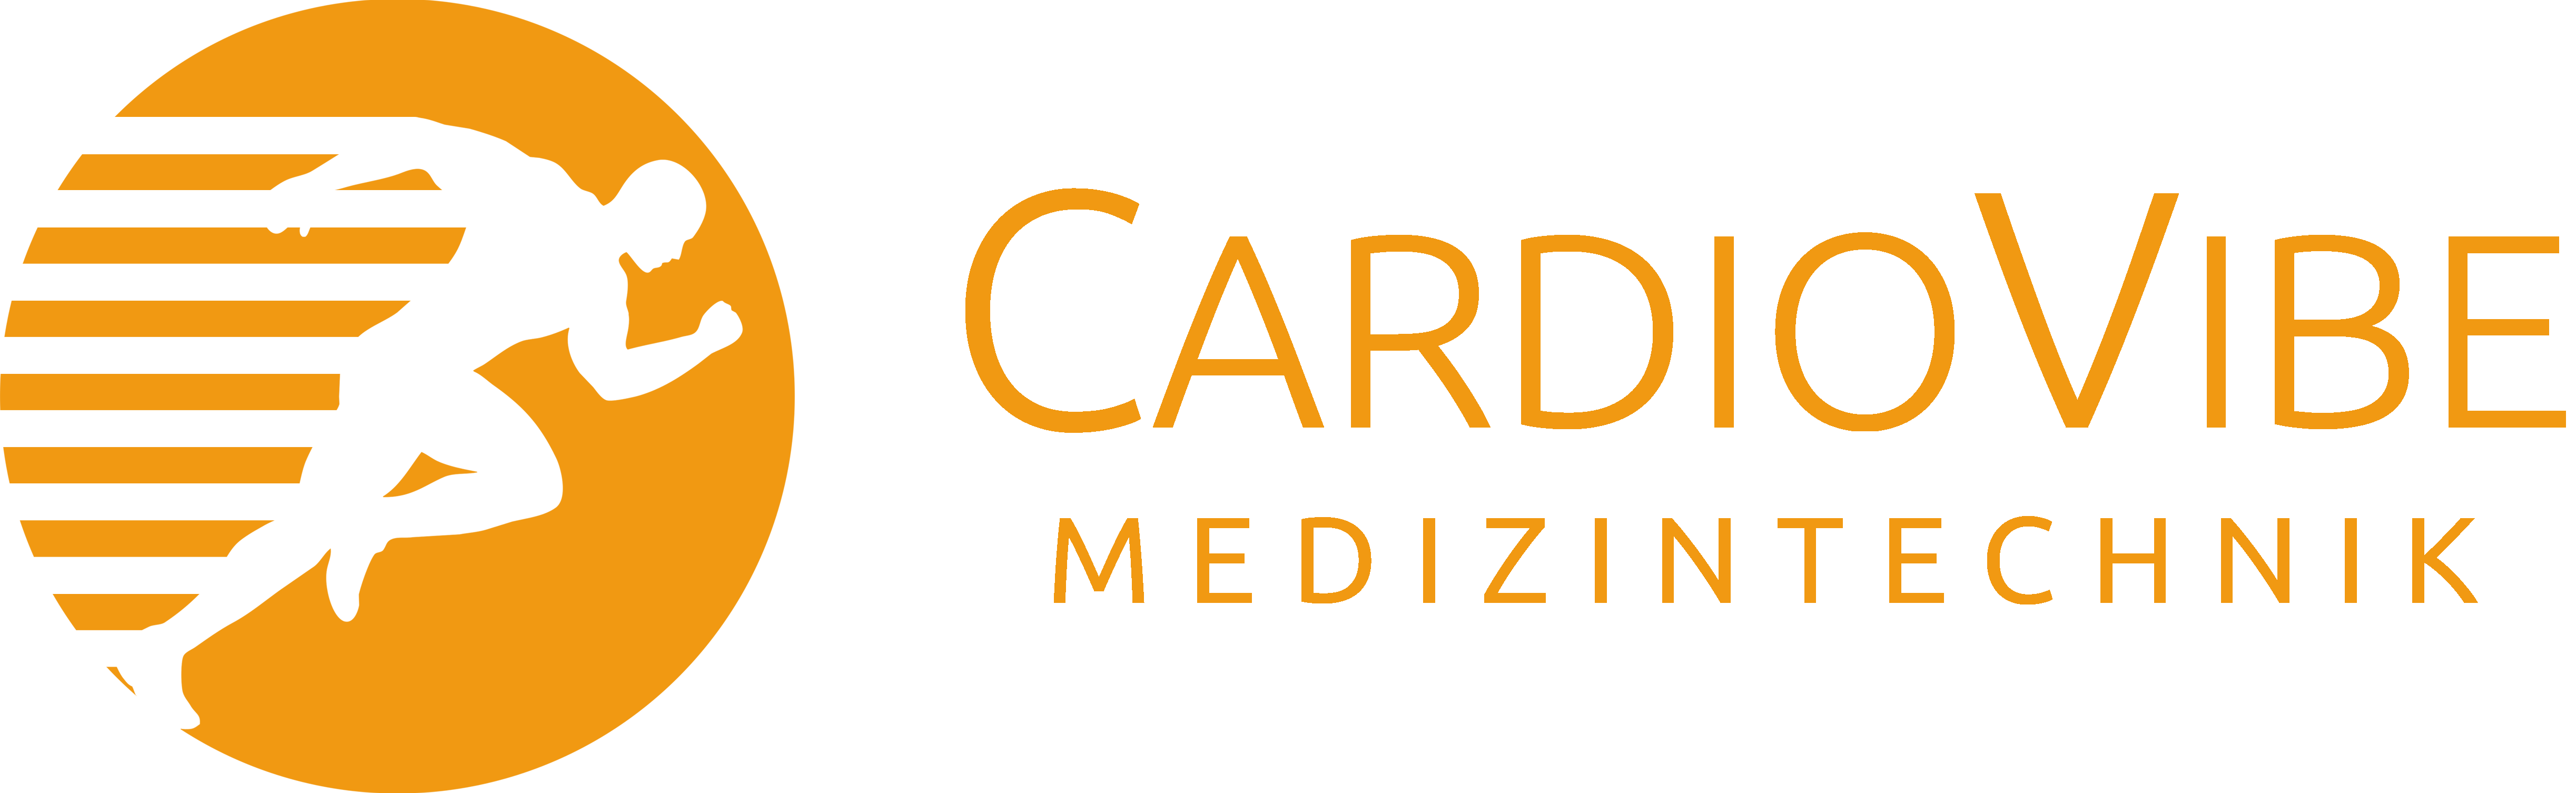 CardioVibe Medizintechnik